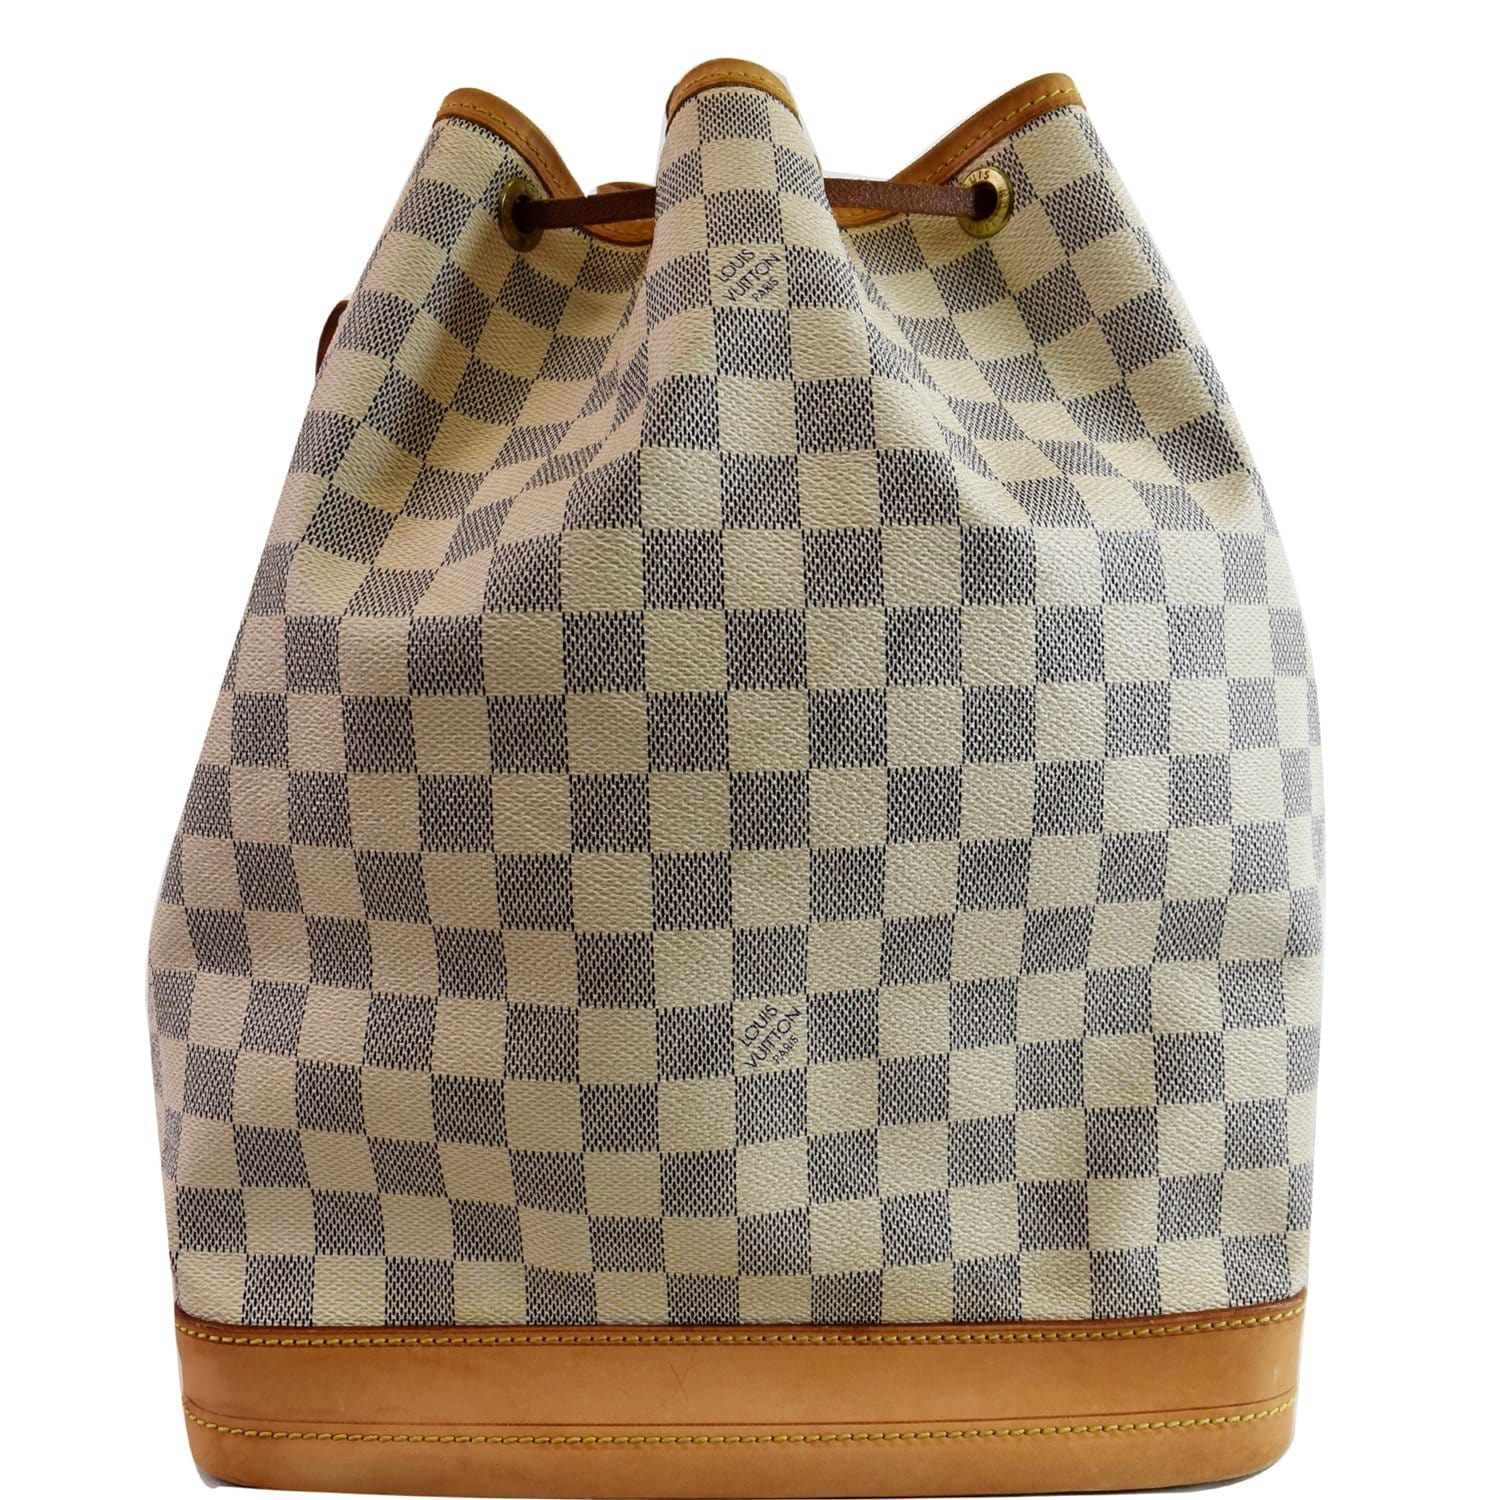 Louis Vuitton Noe Handbag Damier Large - ShopStyle Shoulder Bags